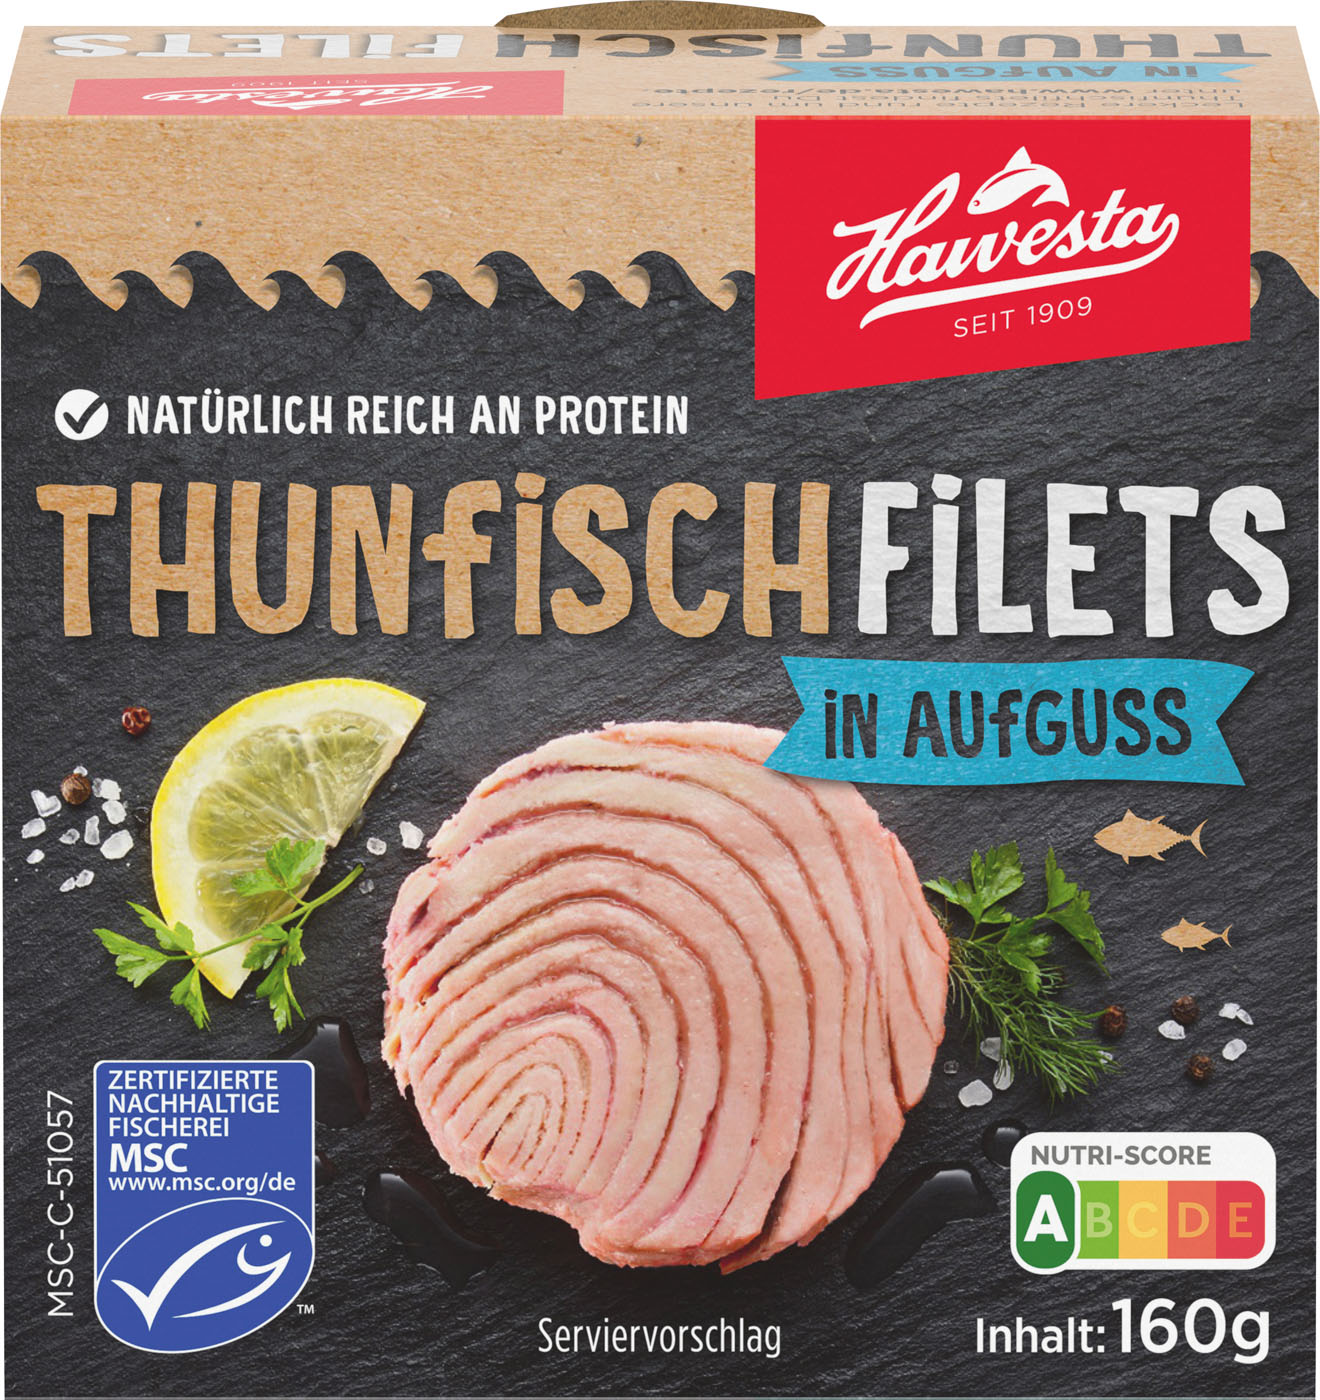 Hawesta MSC Thunfischfilets in Aufguss 160G